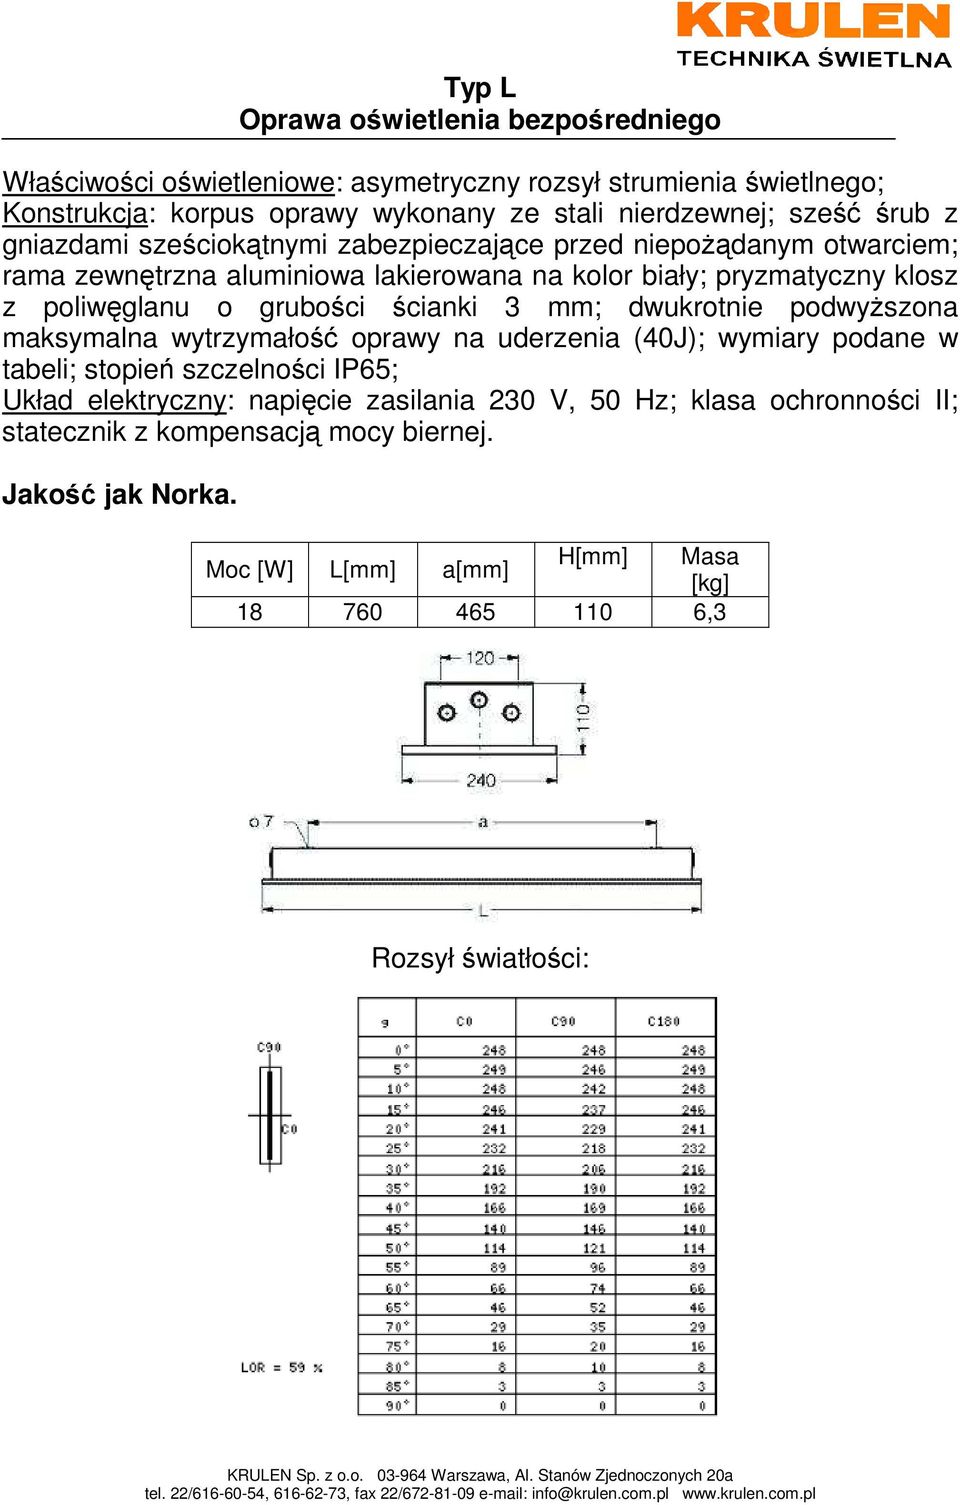 grubości ścianki 3 mm; dwukrotnie podwyŝszona maksymalna wytrzymałość oprawy na uderzenia (40J); wymiary podane w tabeli; stopień szczelności IP65; Układ elektryczny: